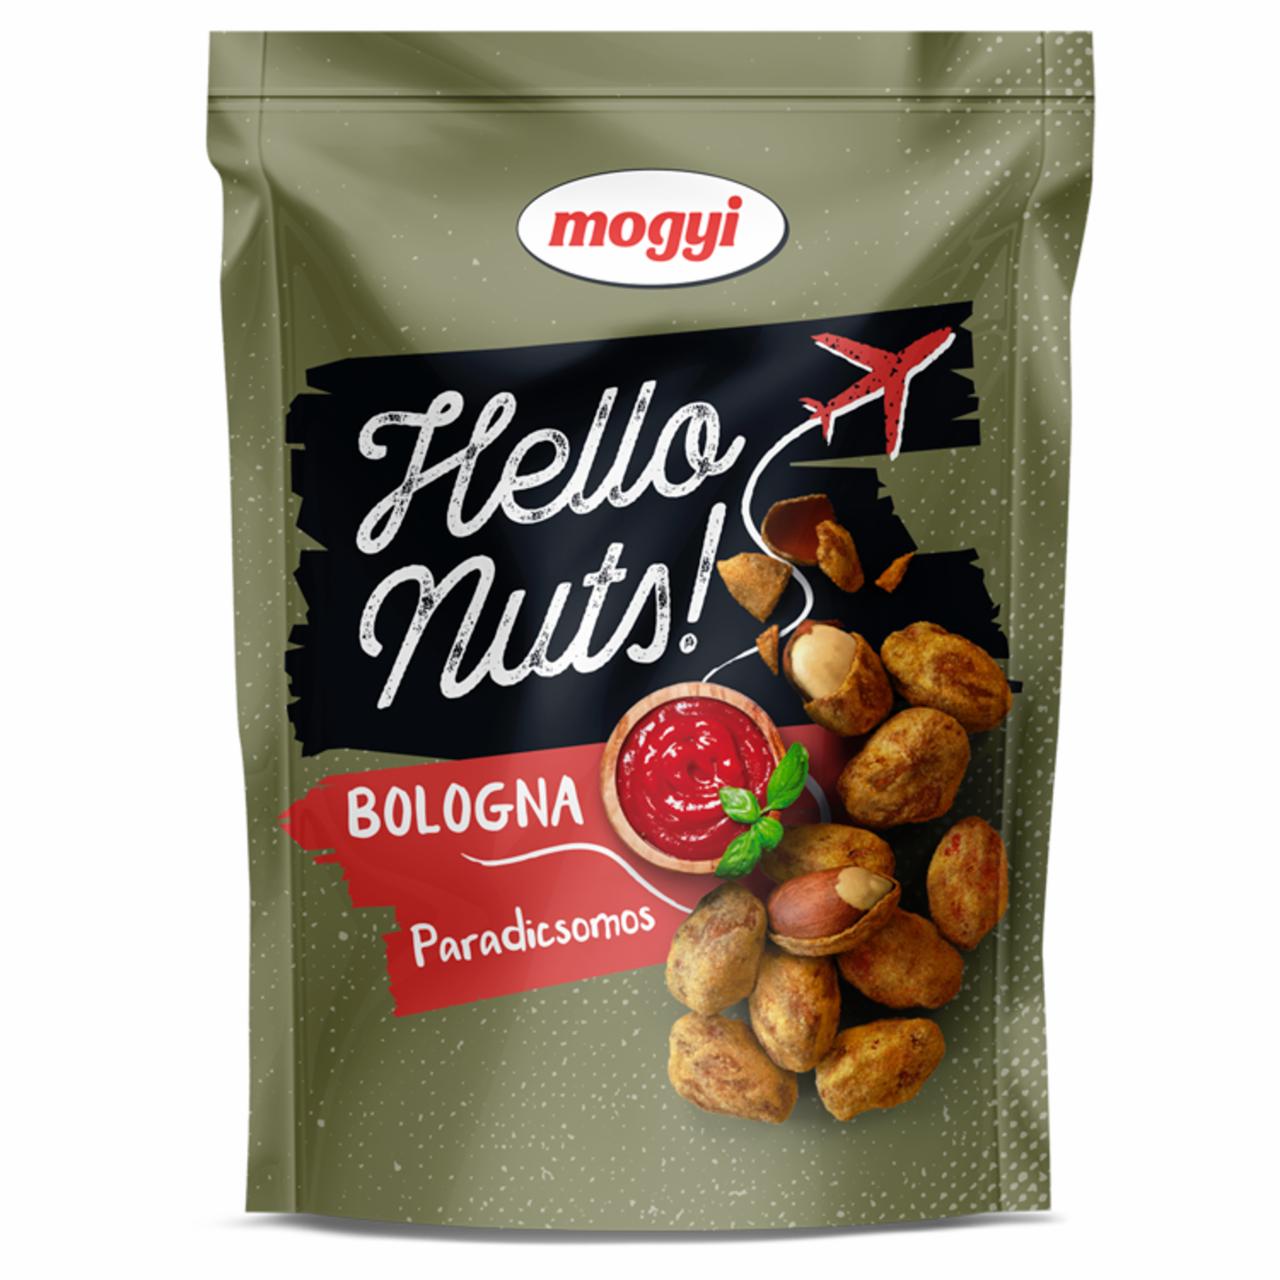 Képek - Mogyi Hello Nuts! Bologna paradicsomos, csicseriborsós tésztabundában pörkölt földimogyoró 100 g